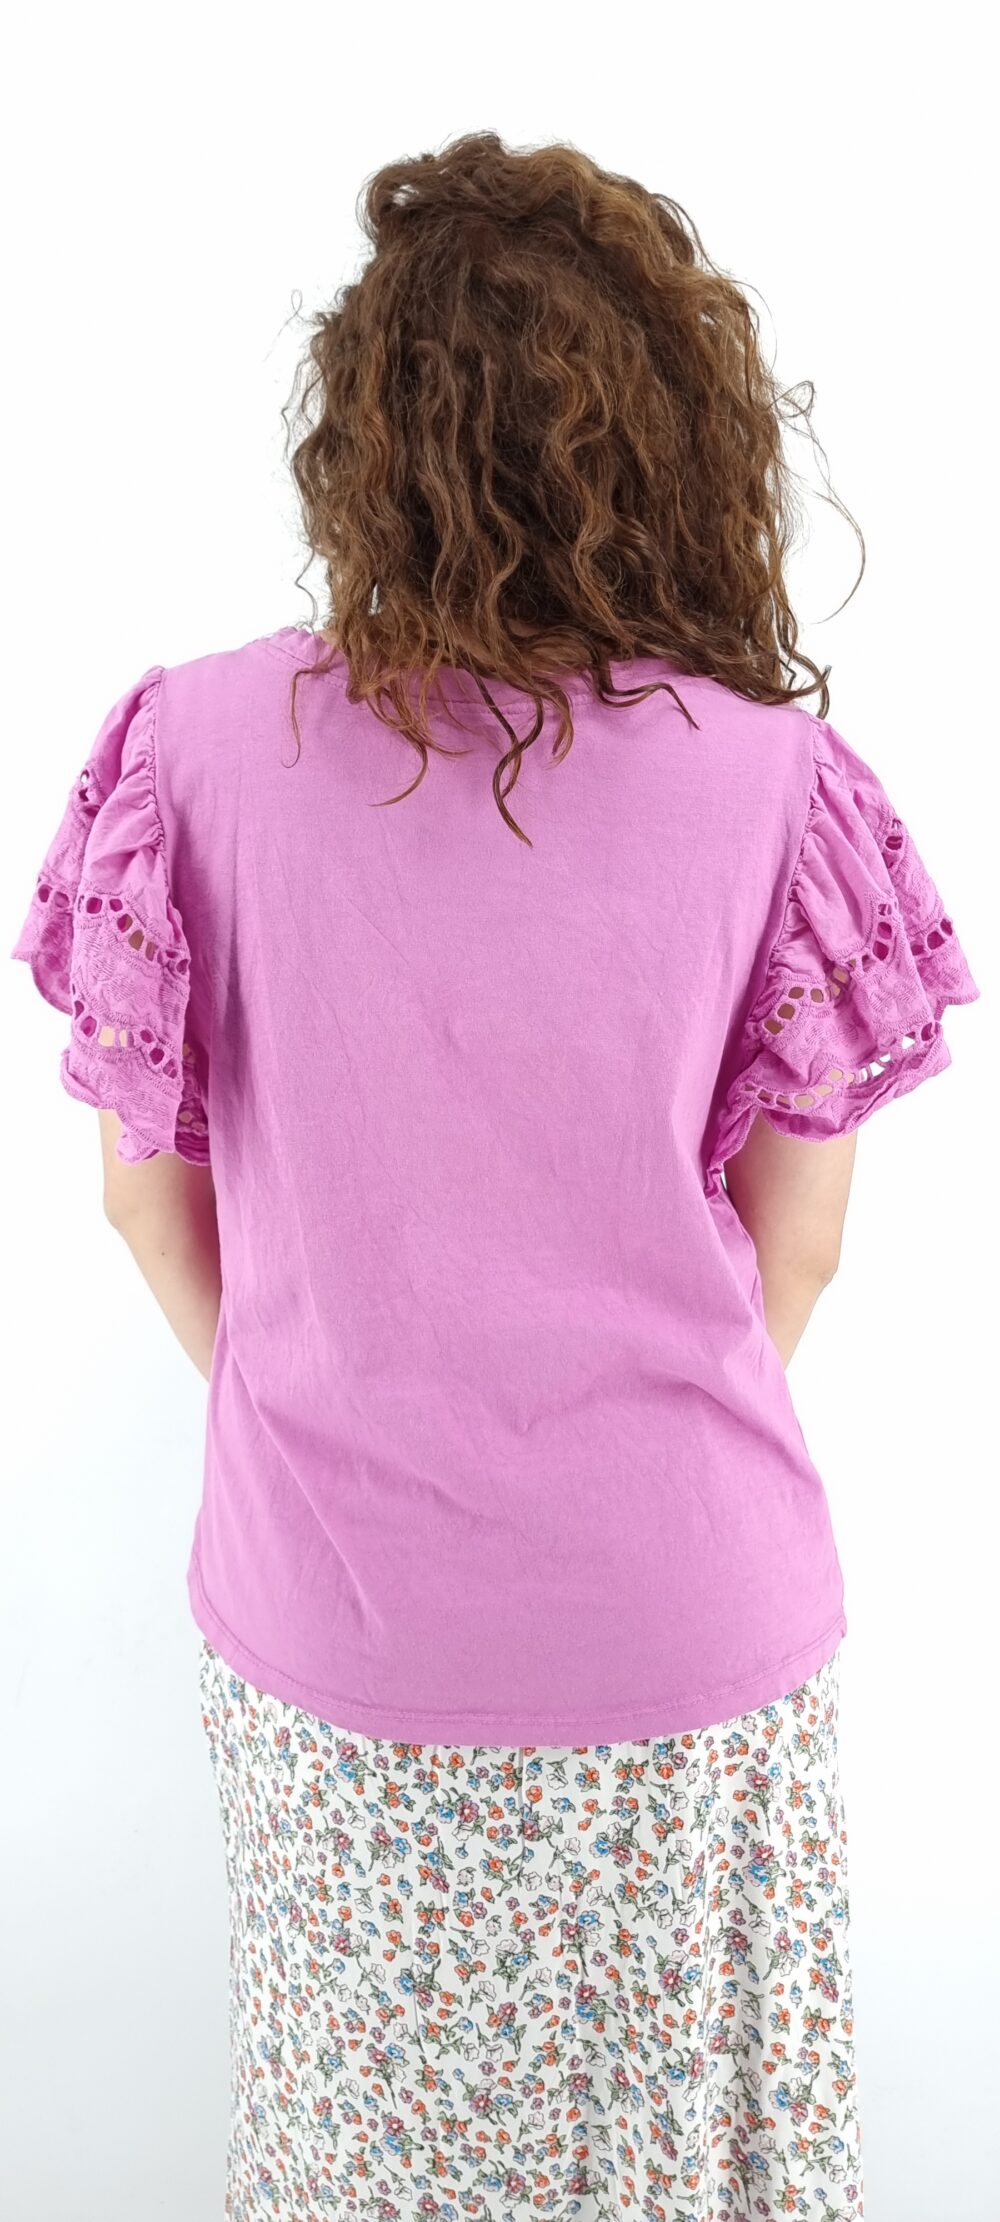 Μπλούζα με ιδιαίτερο κοντό μανίκι ροζ